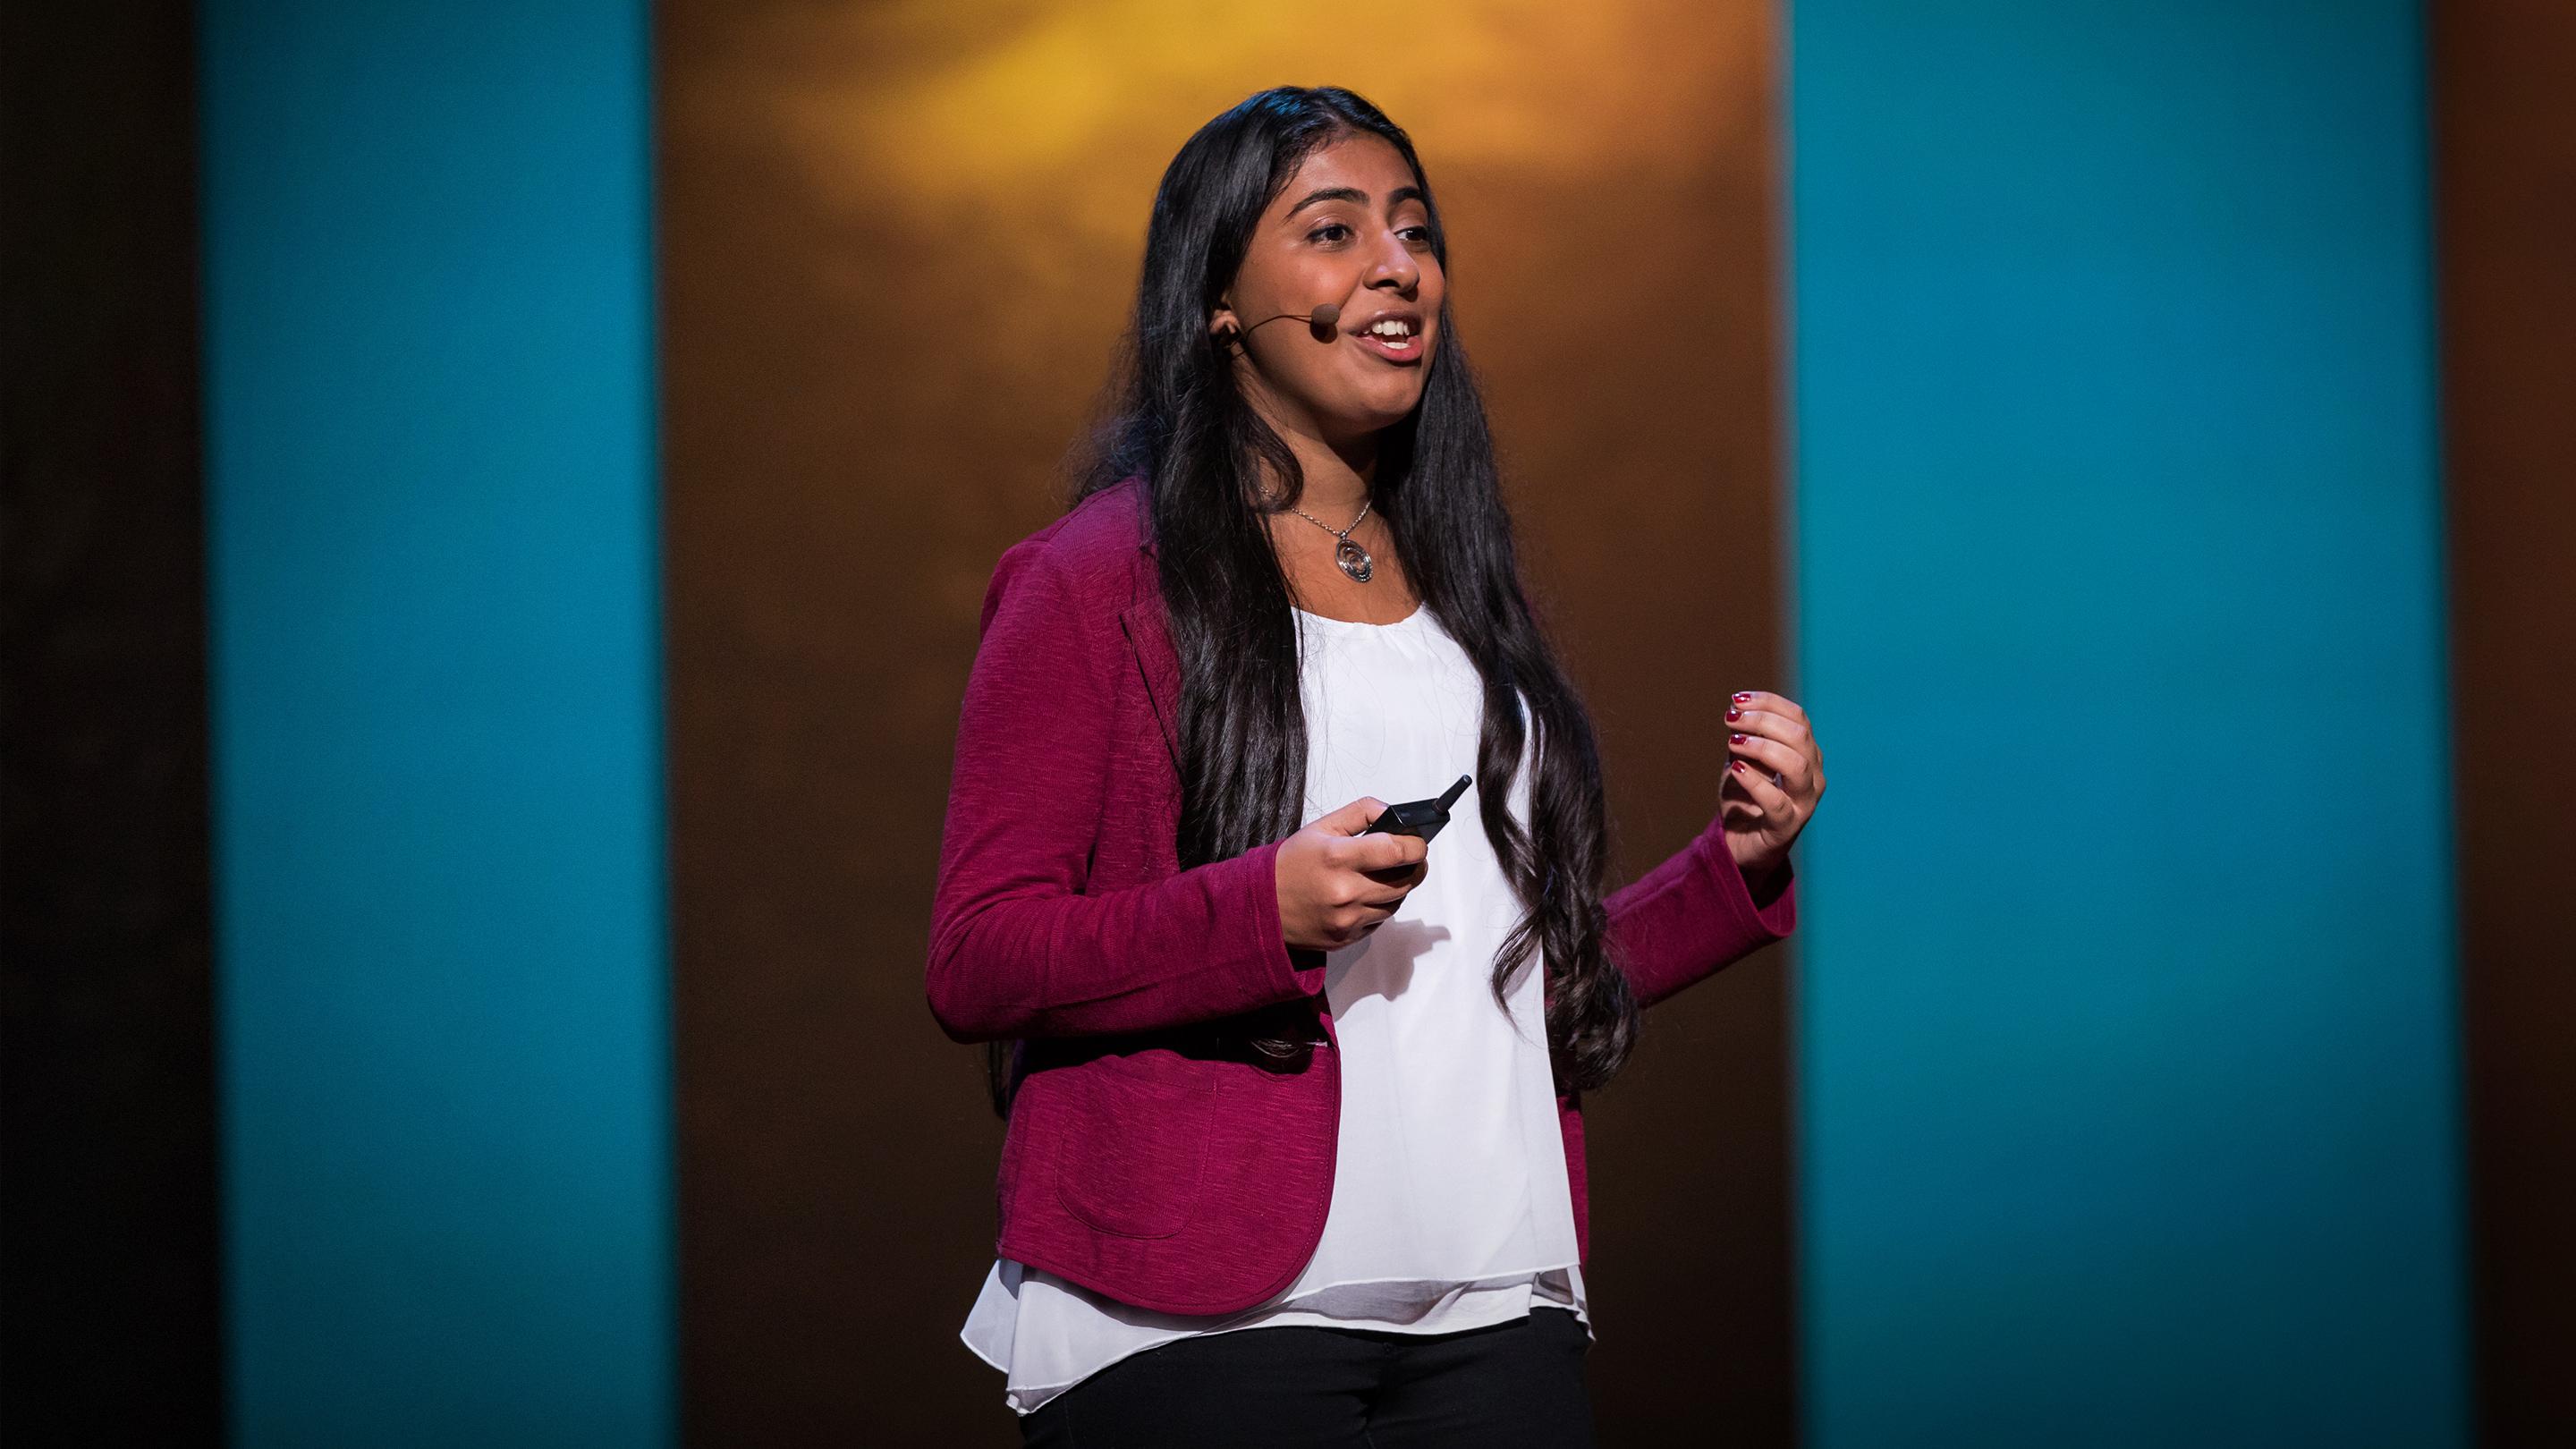 La quête d’une jeune scientifique pour de l’eau potable | Deepika Kurup